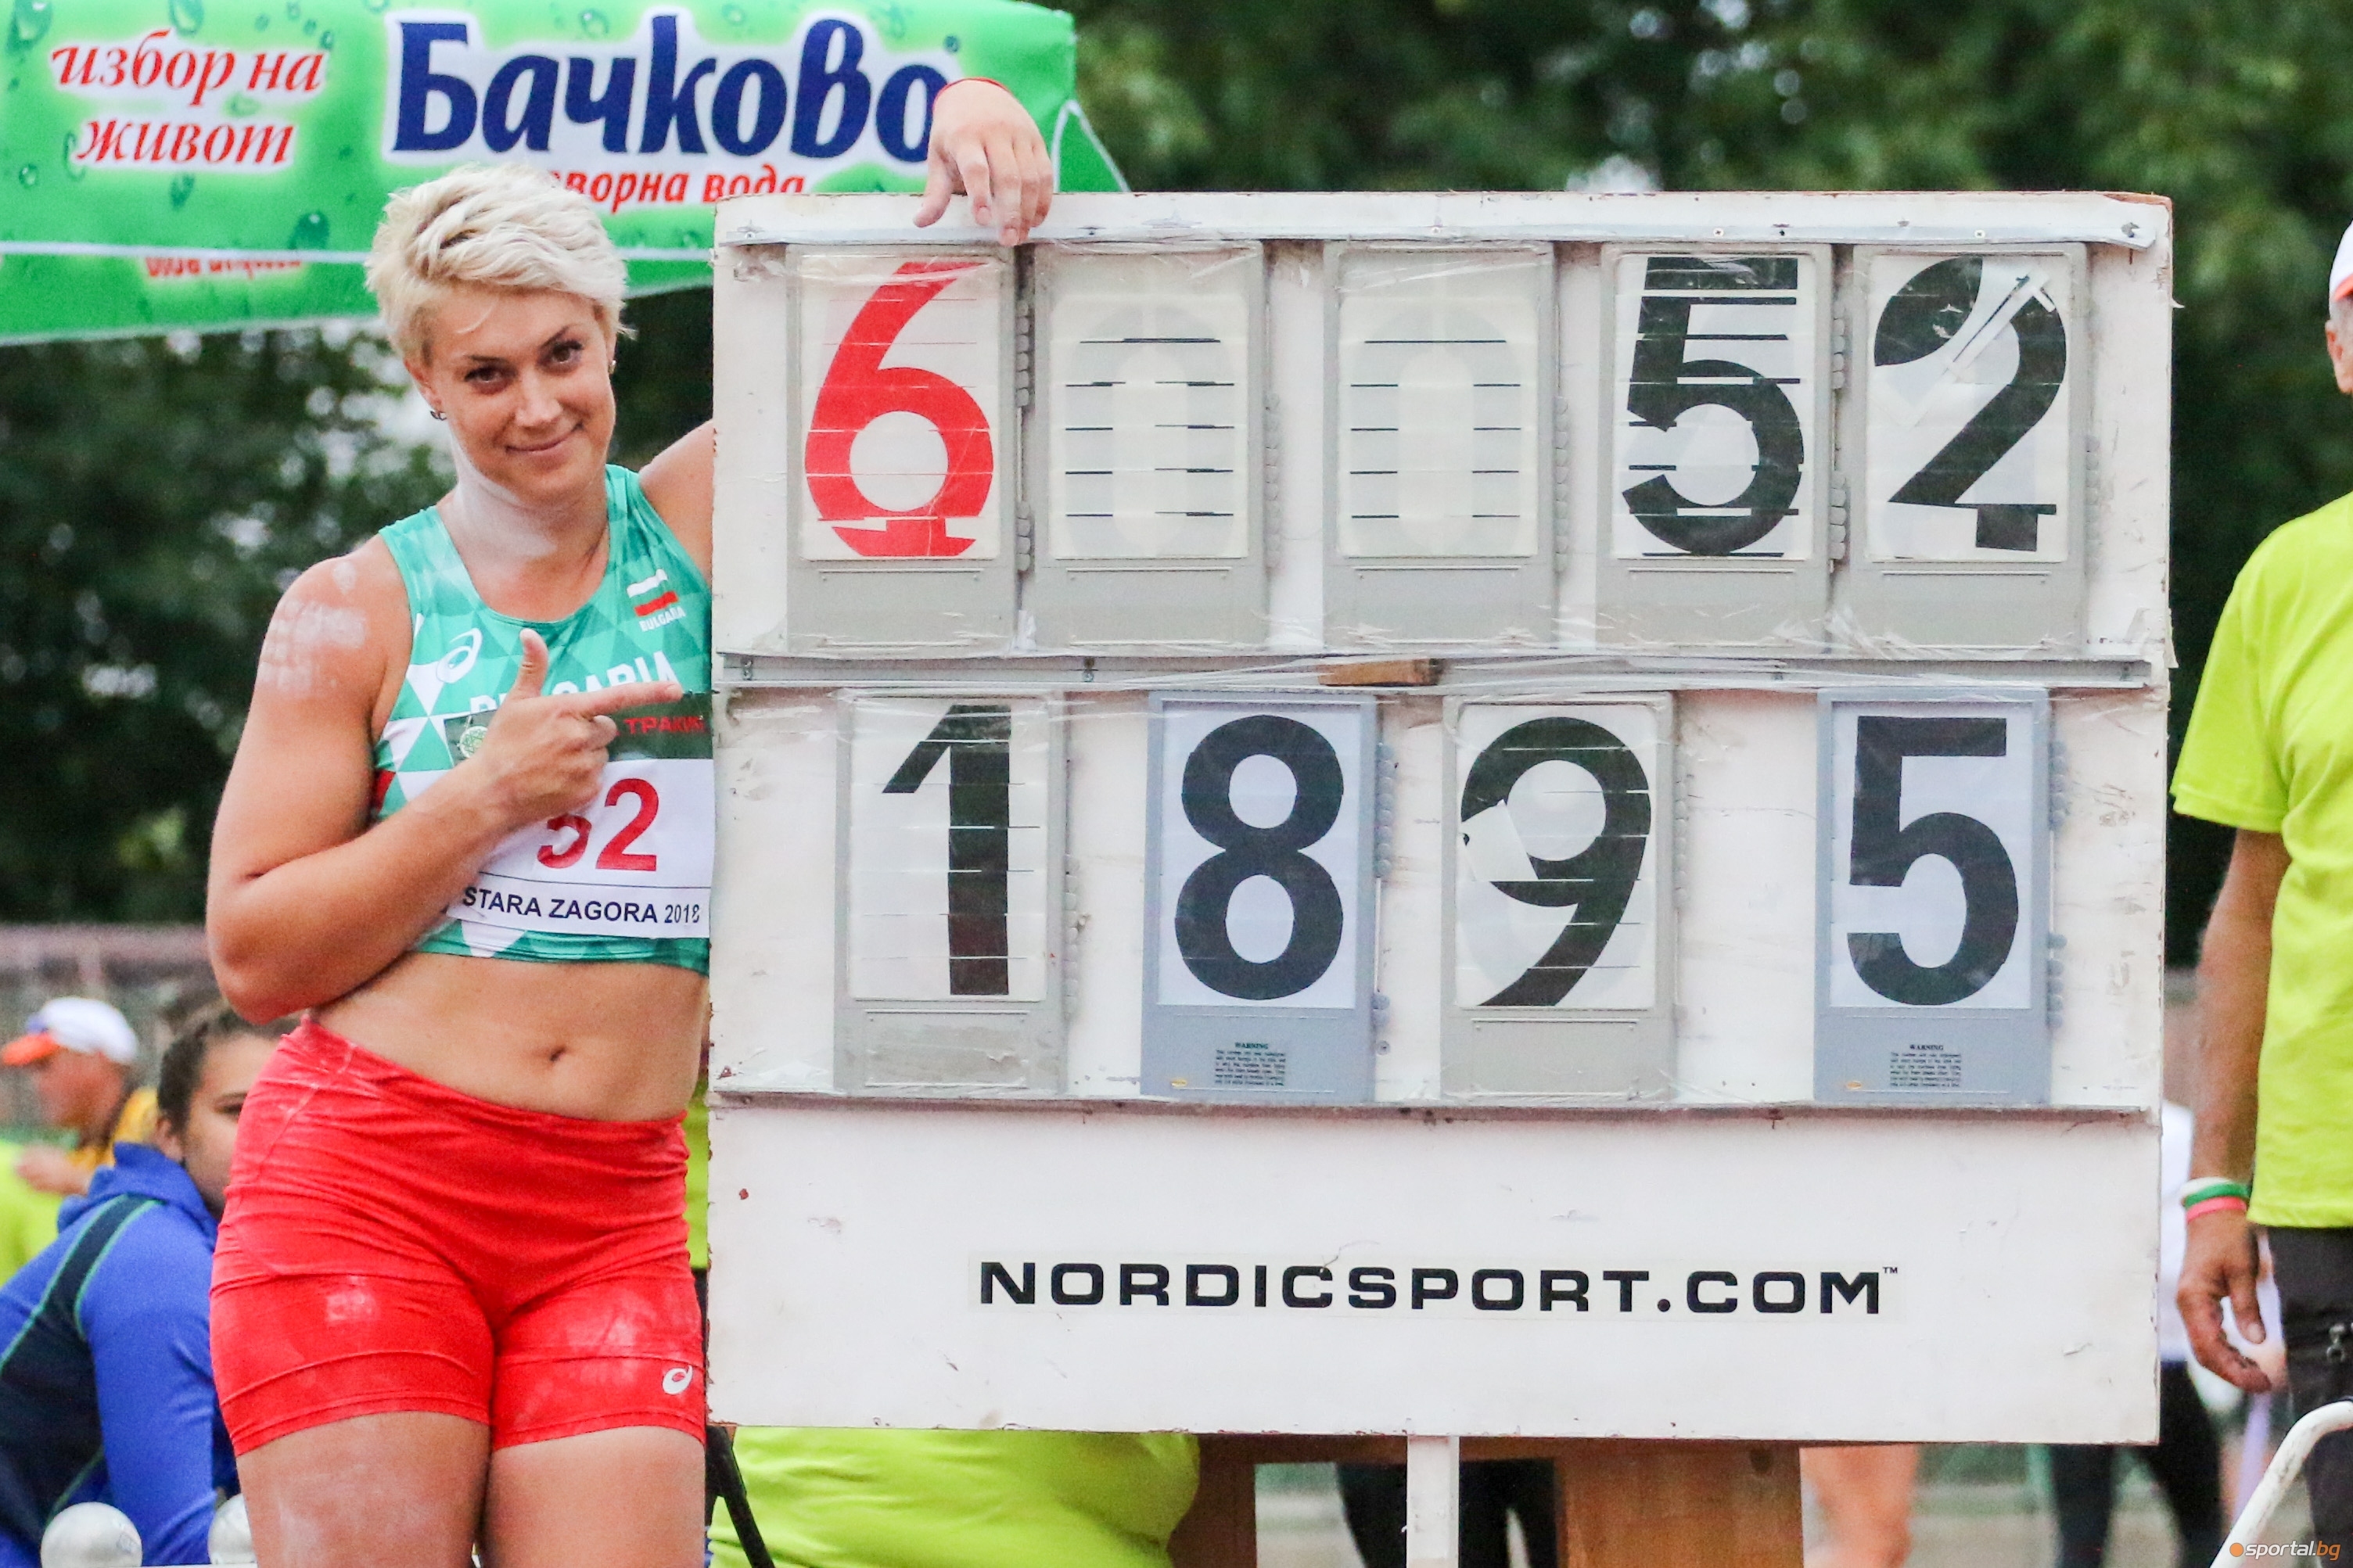 Радослава Мавродиева е с последен стартов номер 12 във финала